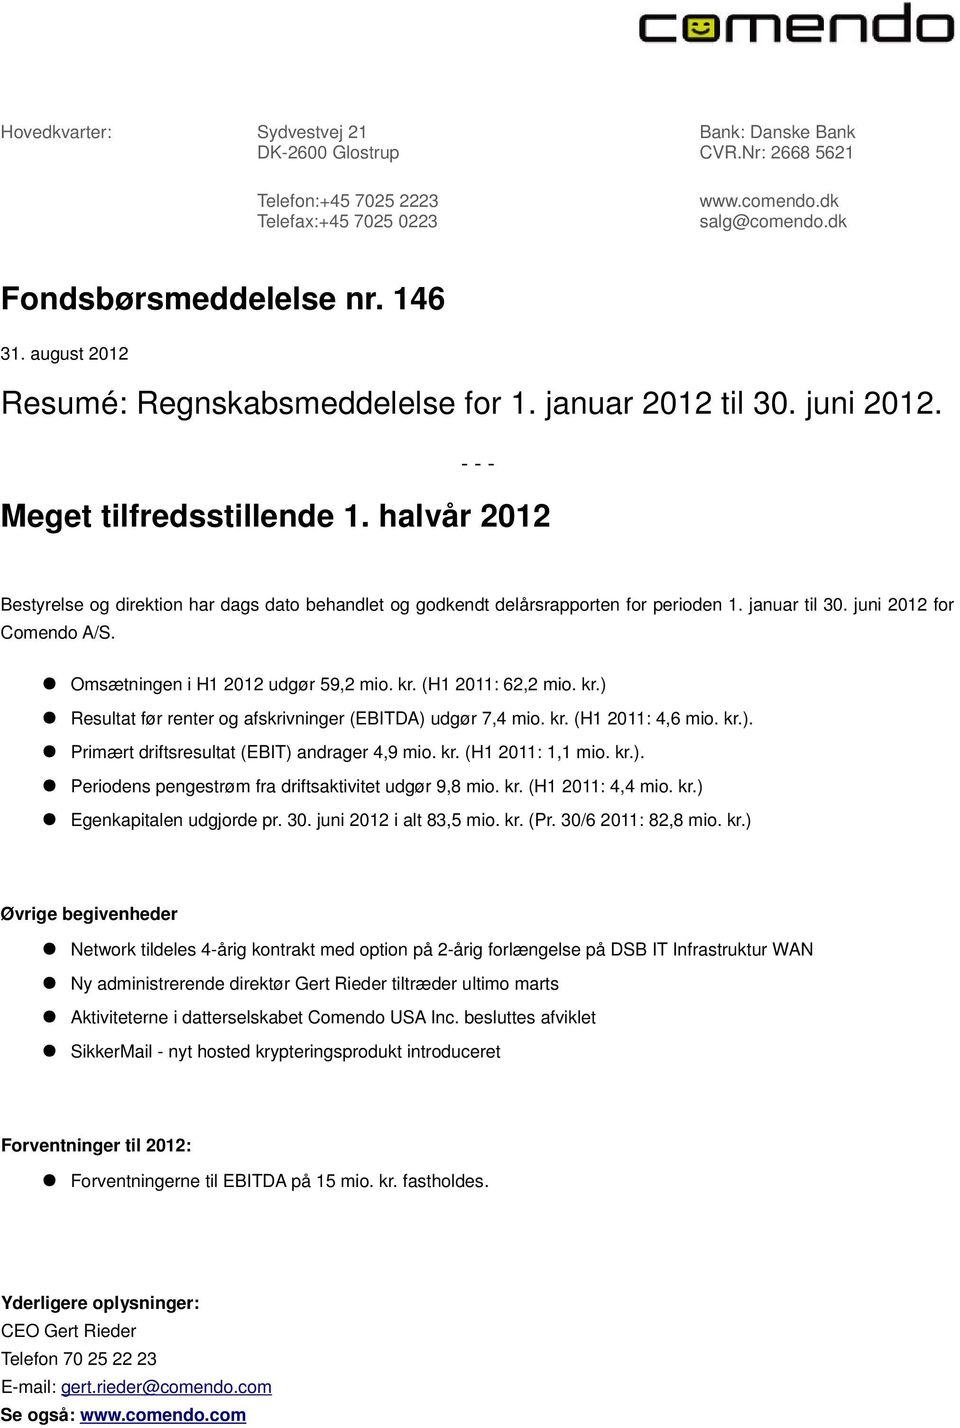 halvår 2012 Bestyrelse og direktion har dags dato behandlet og godkendt delårsrapporten for perioden 1. januar til 30. juni 2012 for Comendo A/S. Omsætningen i H1 2012 udgør 59,2 mio. kr.